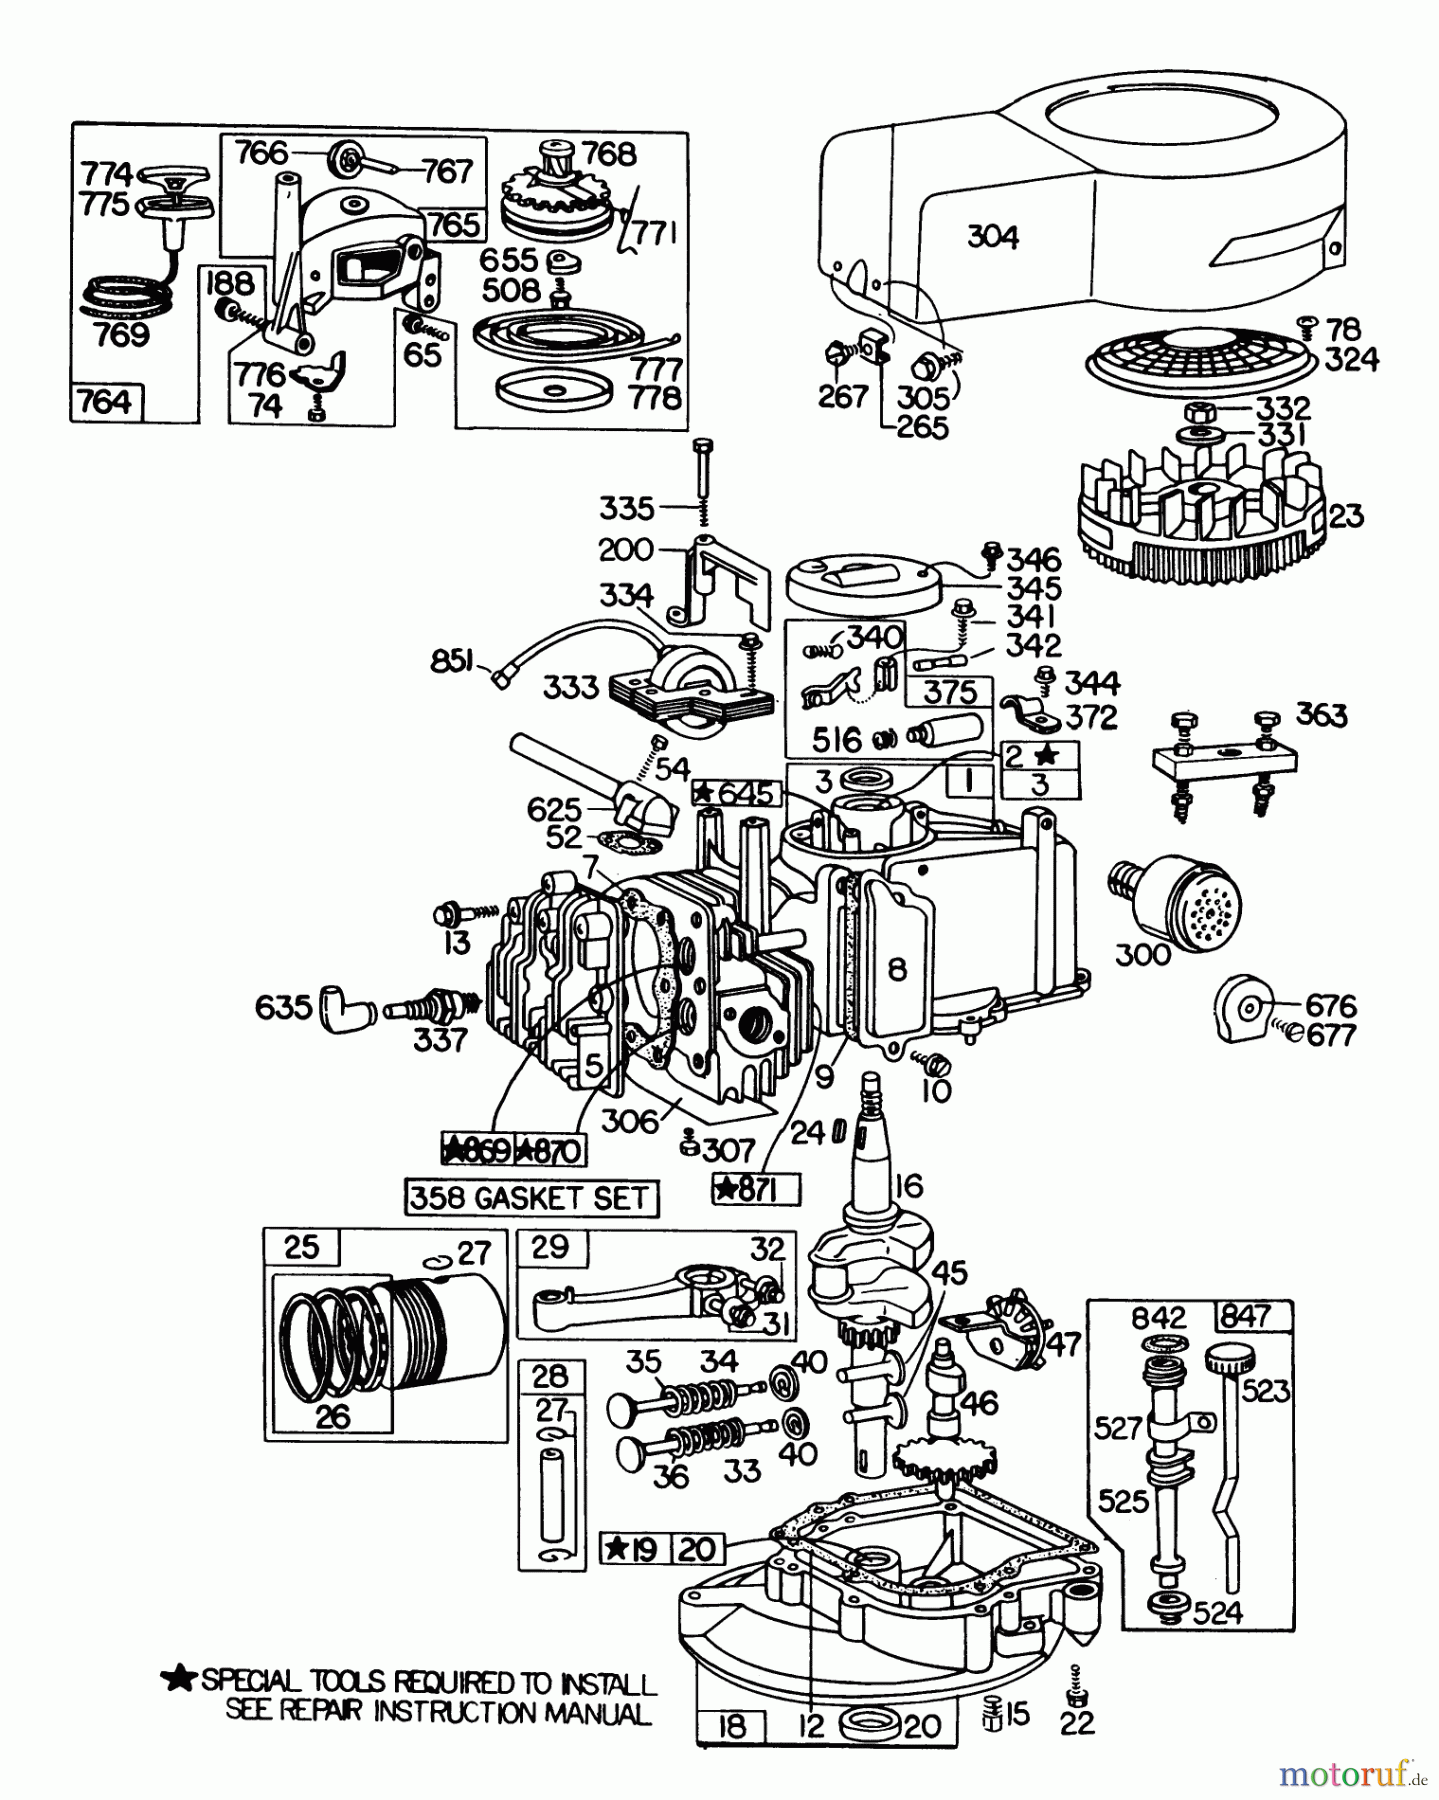  Toro Neu Mowers, Walk-Behind Seite 1 20735 - Toro Lawnmower, 1979 (9000001-9999999) ENGINE BRIGGS & STRATTON MODEL NO. 110908-0380-03